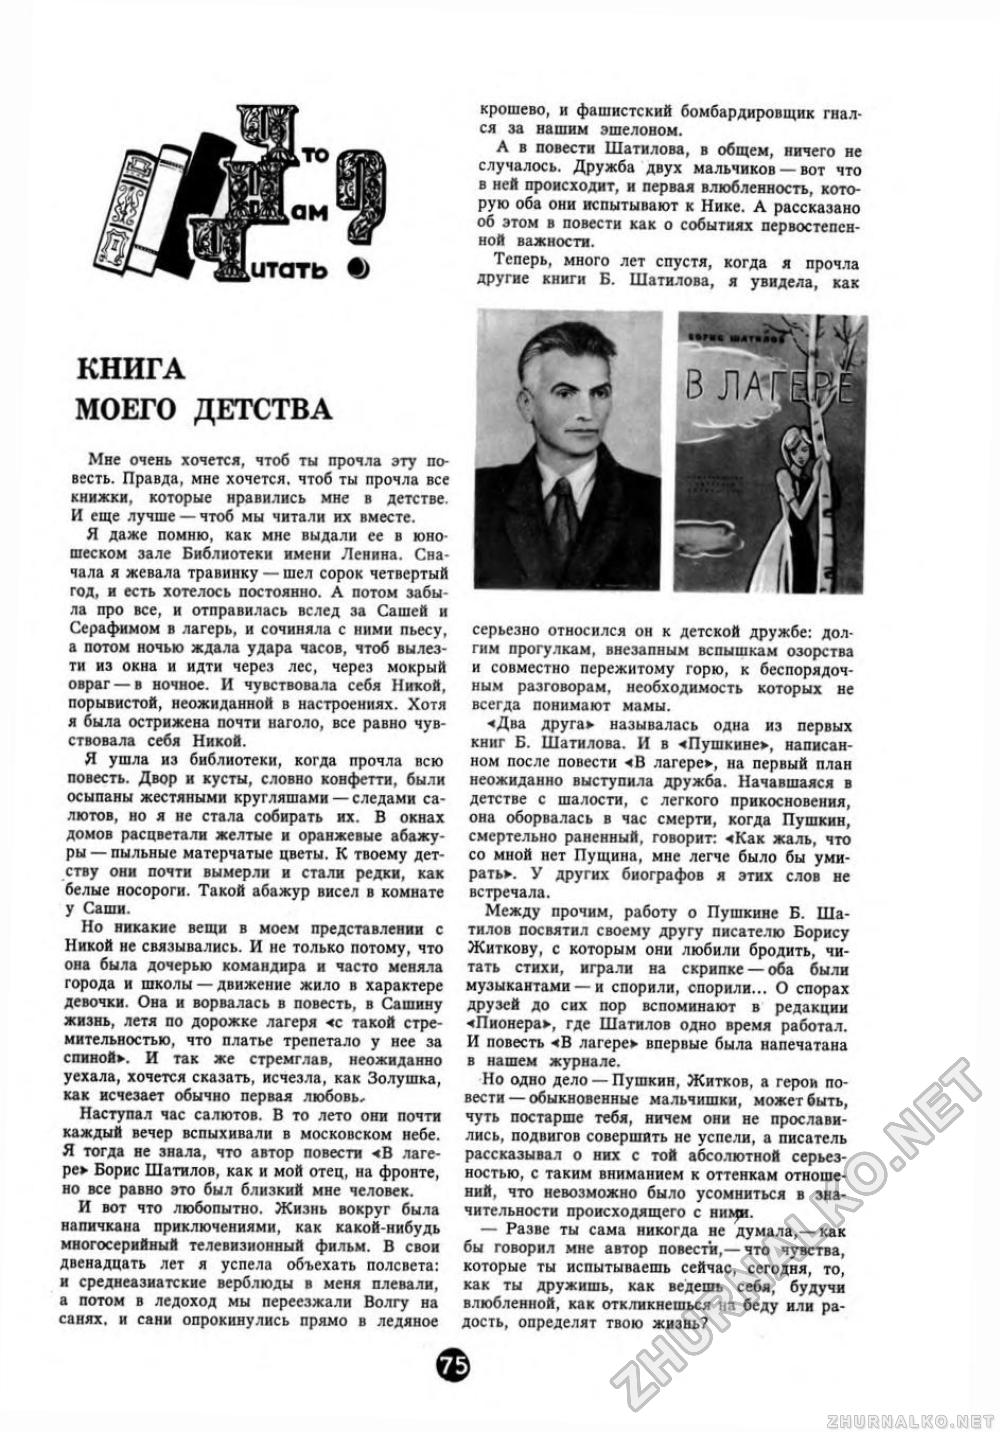 Пионер 1968-11, страница 76